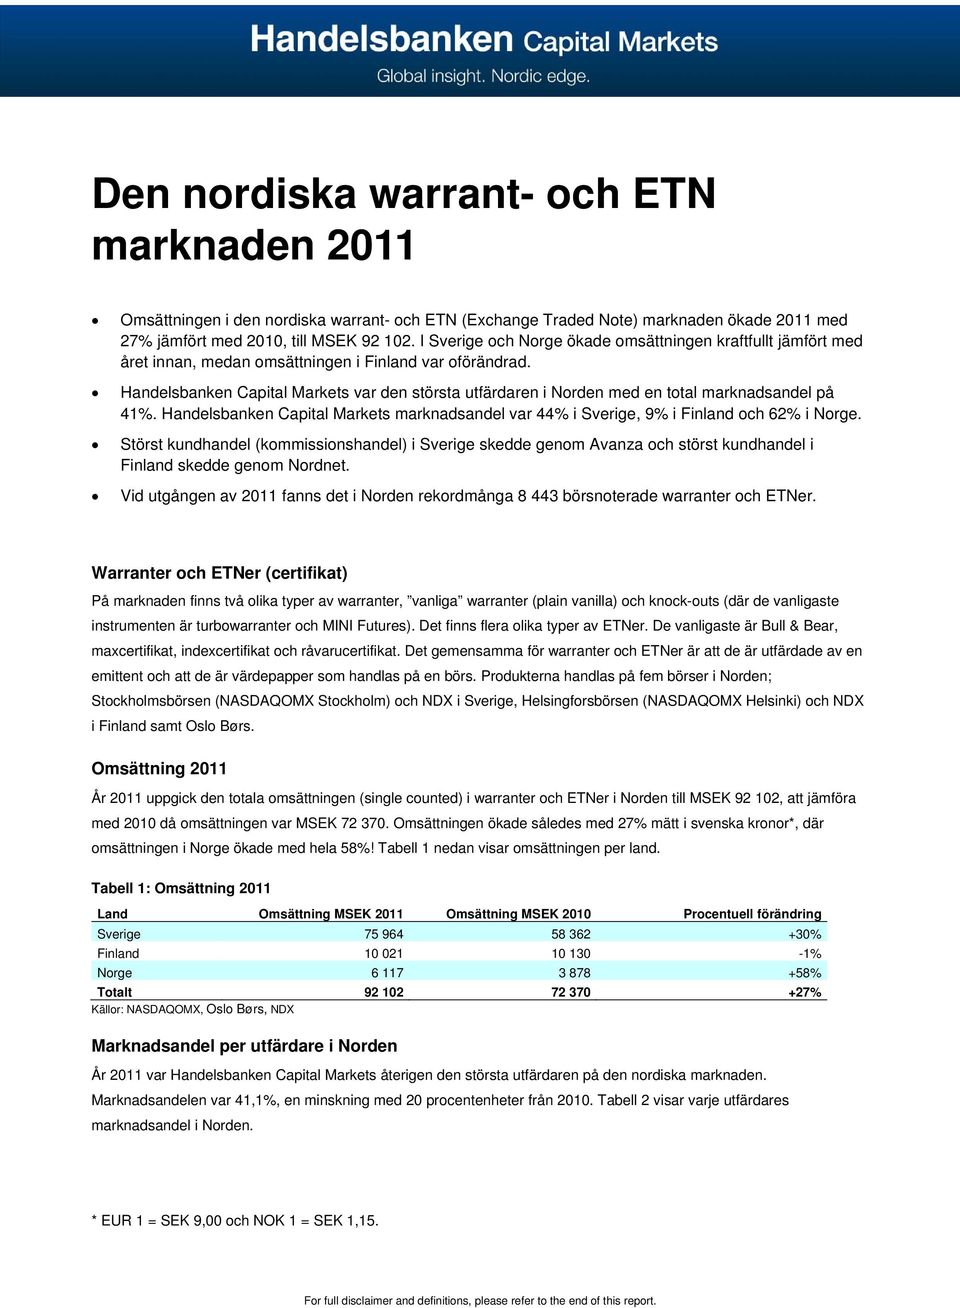 Handelsbanken Capital Markets var den största utfärdaren i Norden med en total marknadsandel på 41%. Handelsbanken Capital Markets marknadsandel var 44% i Sverige, 9% i Finland och 62% i Norge.